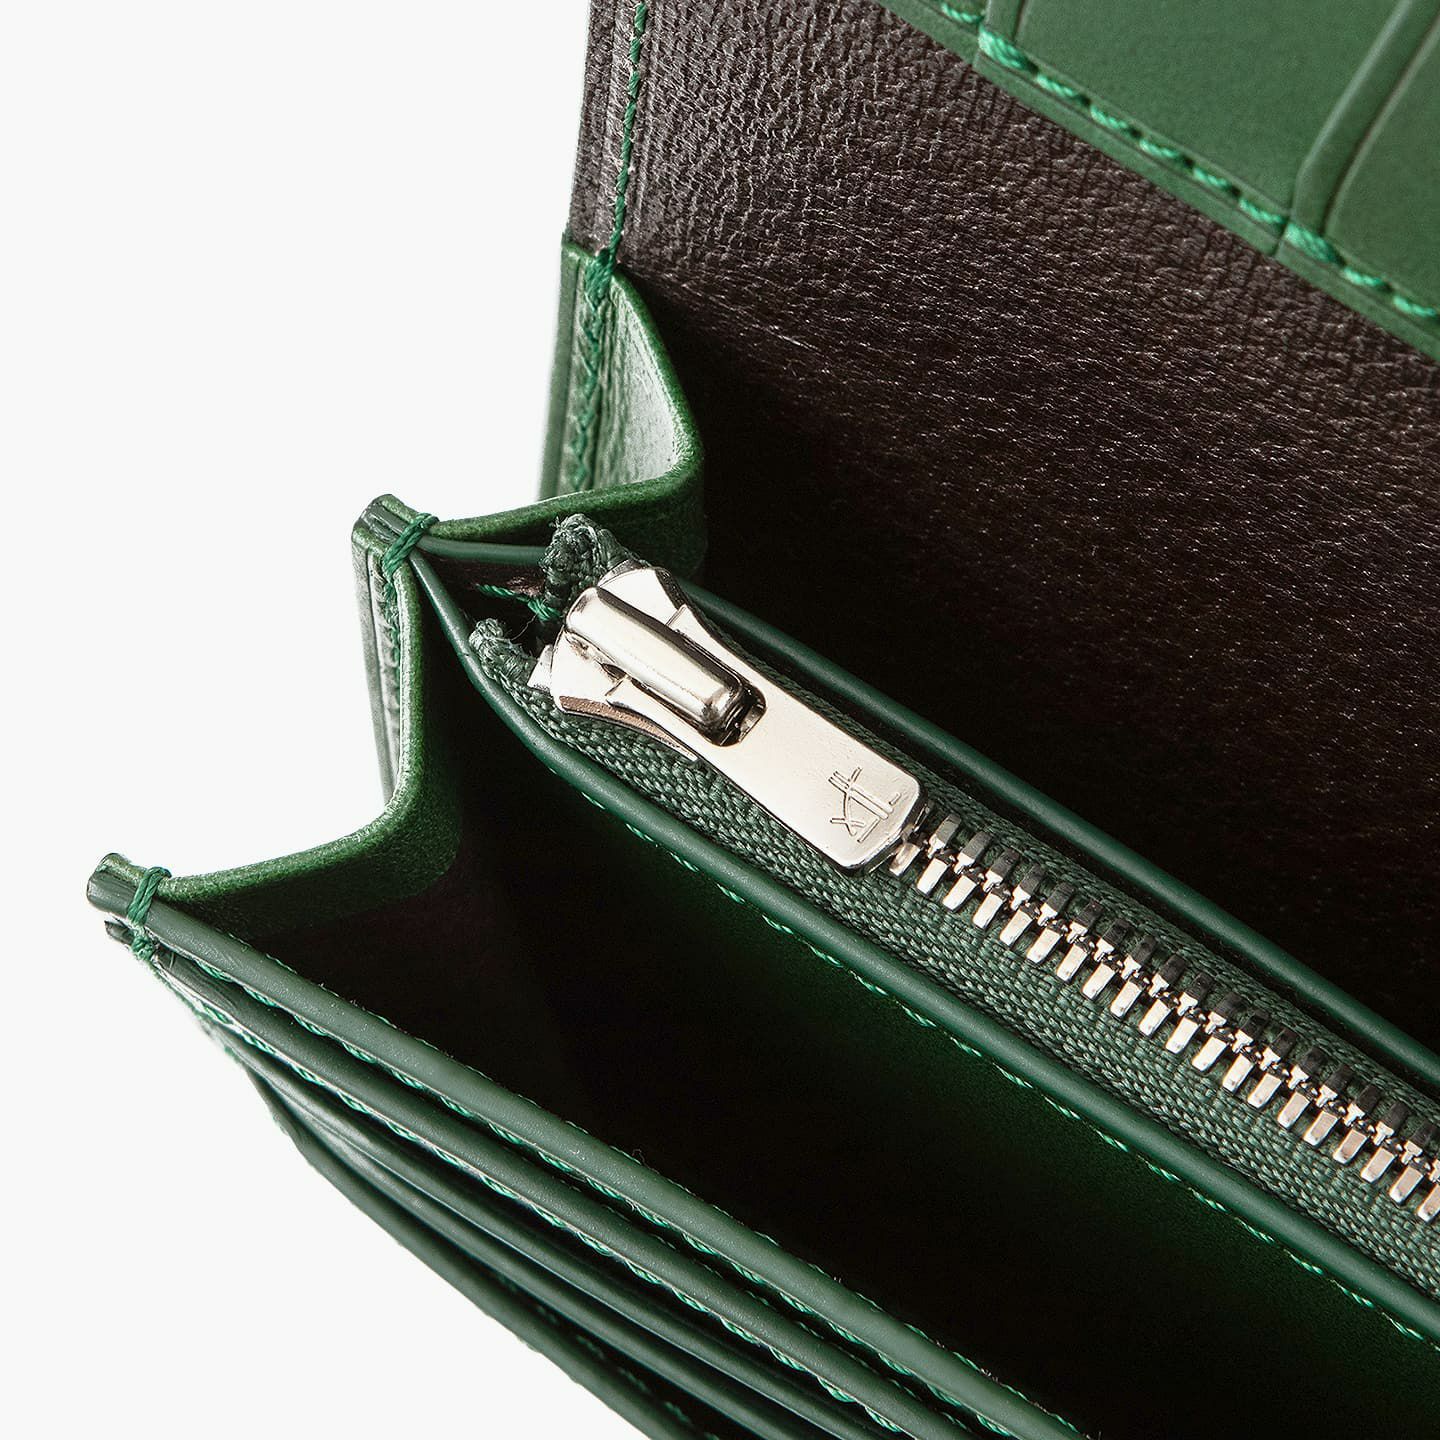 ブッテーロ 長財布 | 大人のバッグ・財布・ 長財布 など拘りの日本製